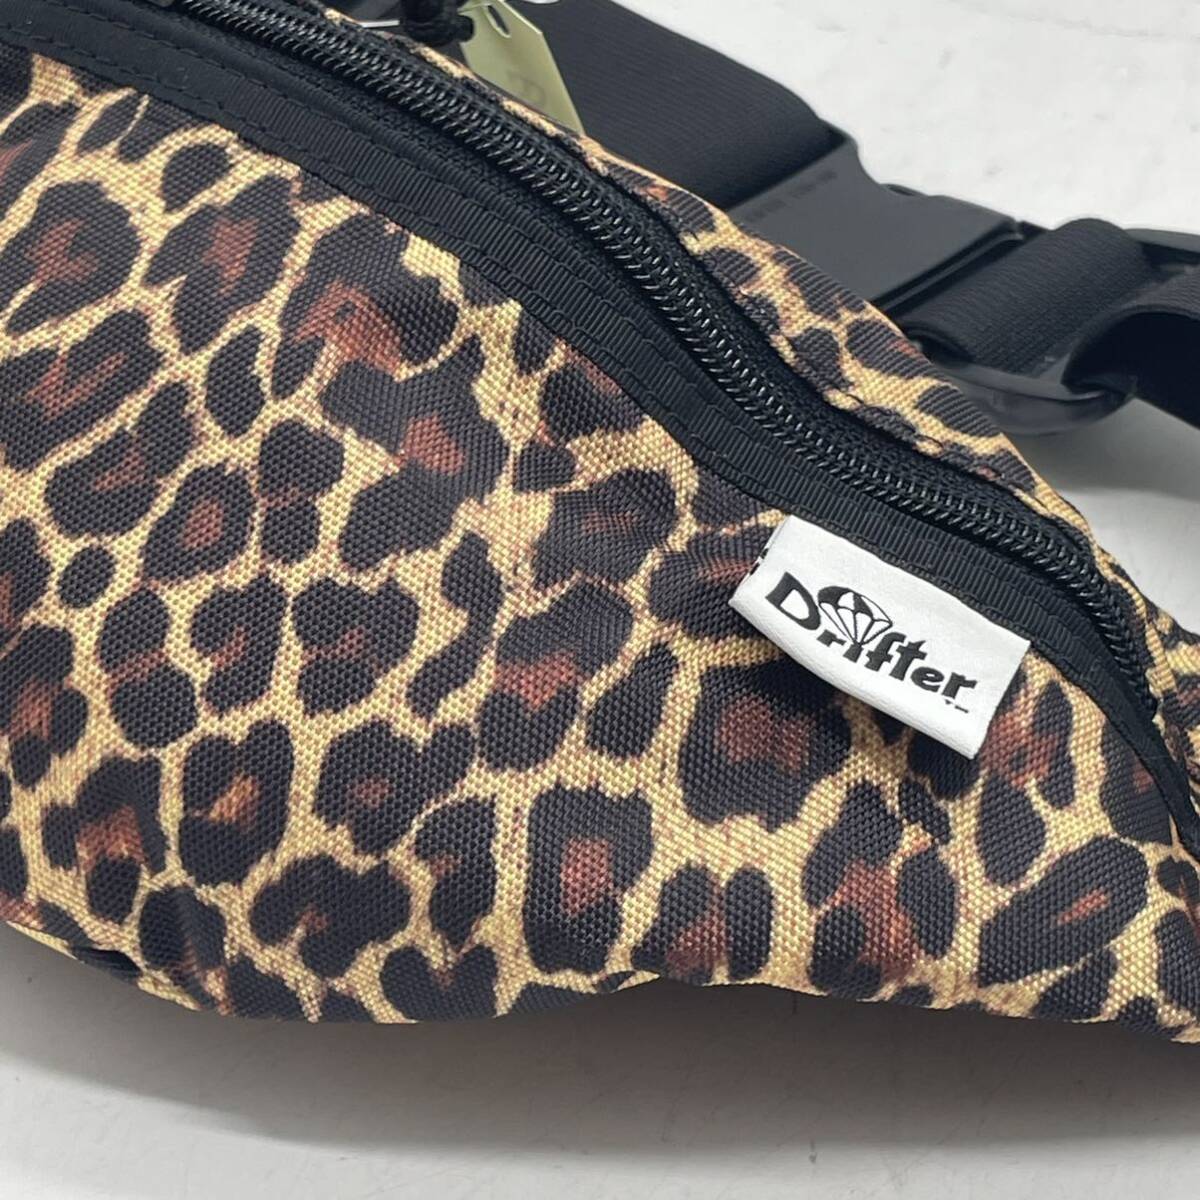 *BN4427*Drifter Drifter body bag waist bag leopard print total pattern belt bag 